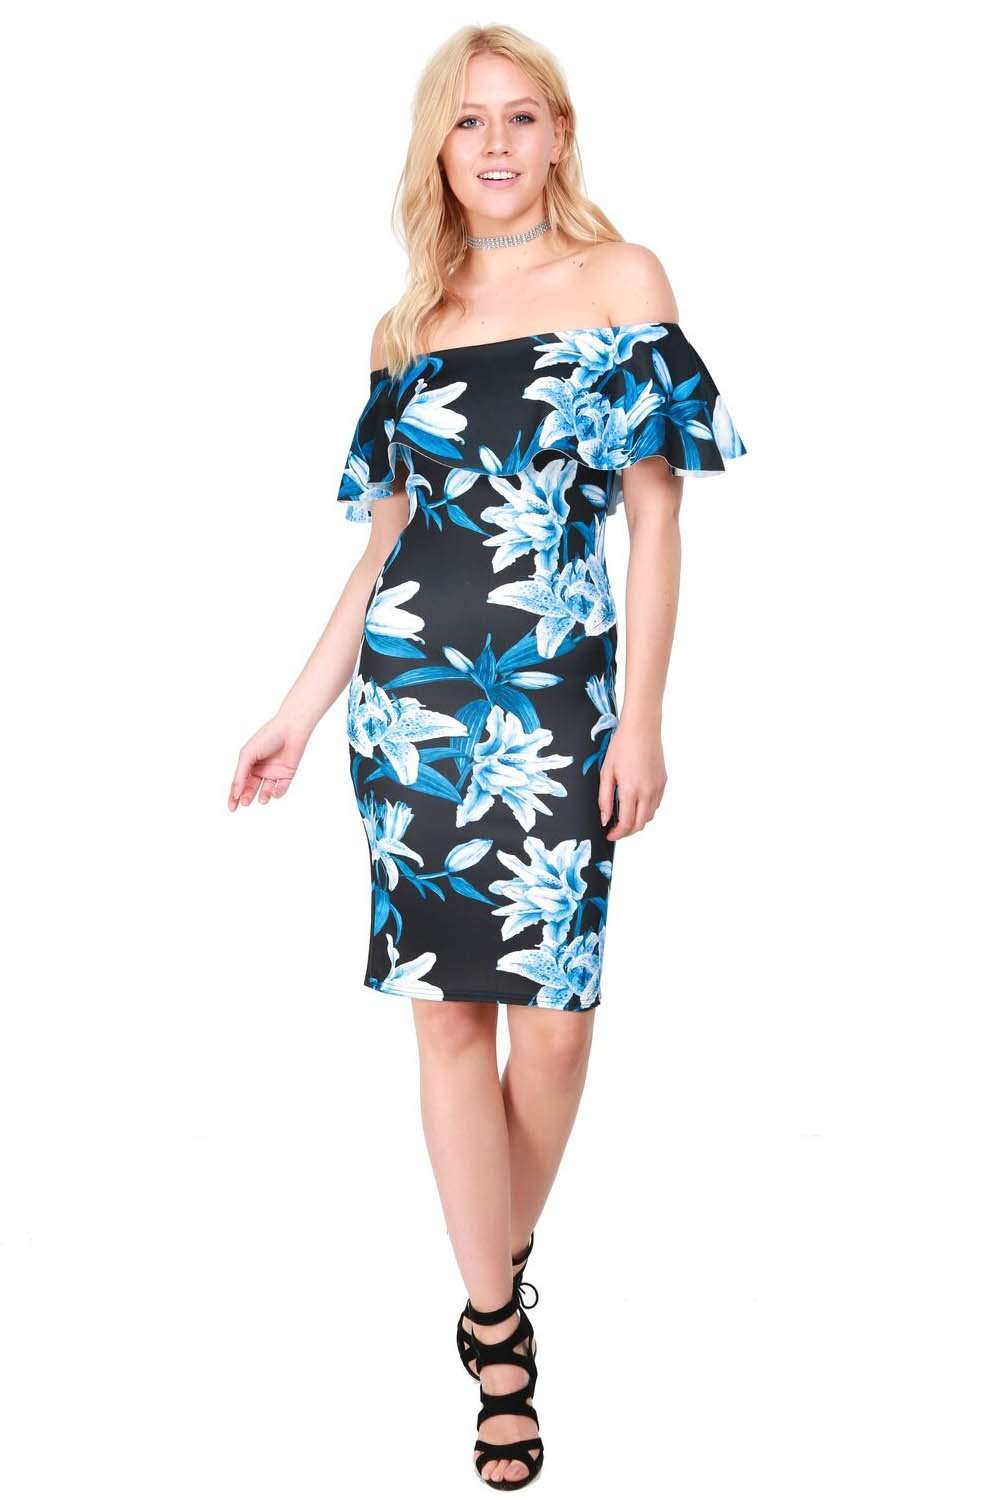 Off Shoulder Blue Floral Midi Bodycon Dress - bejealous-com